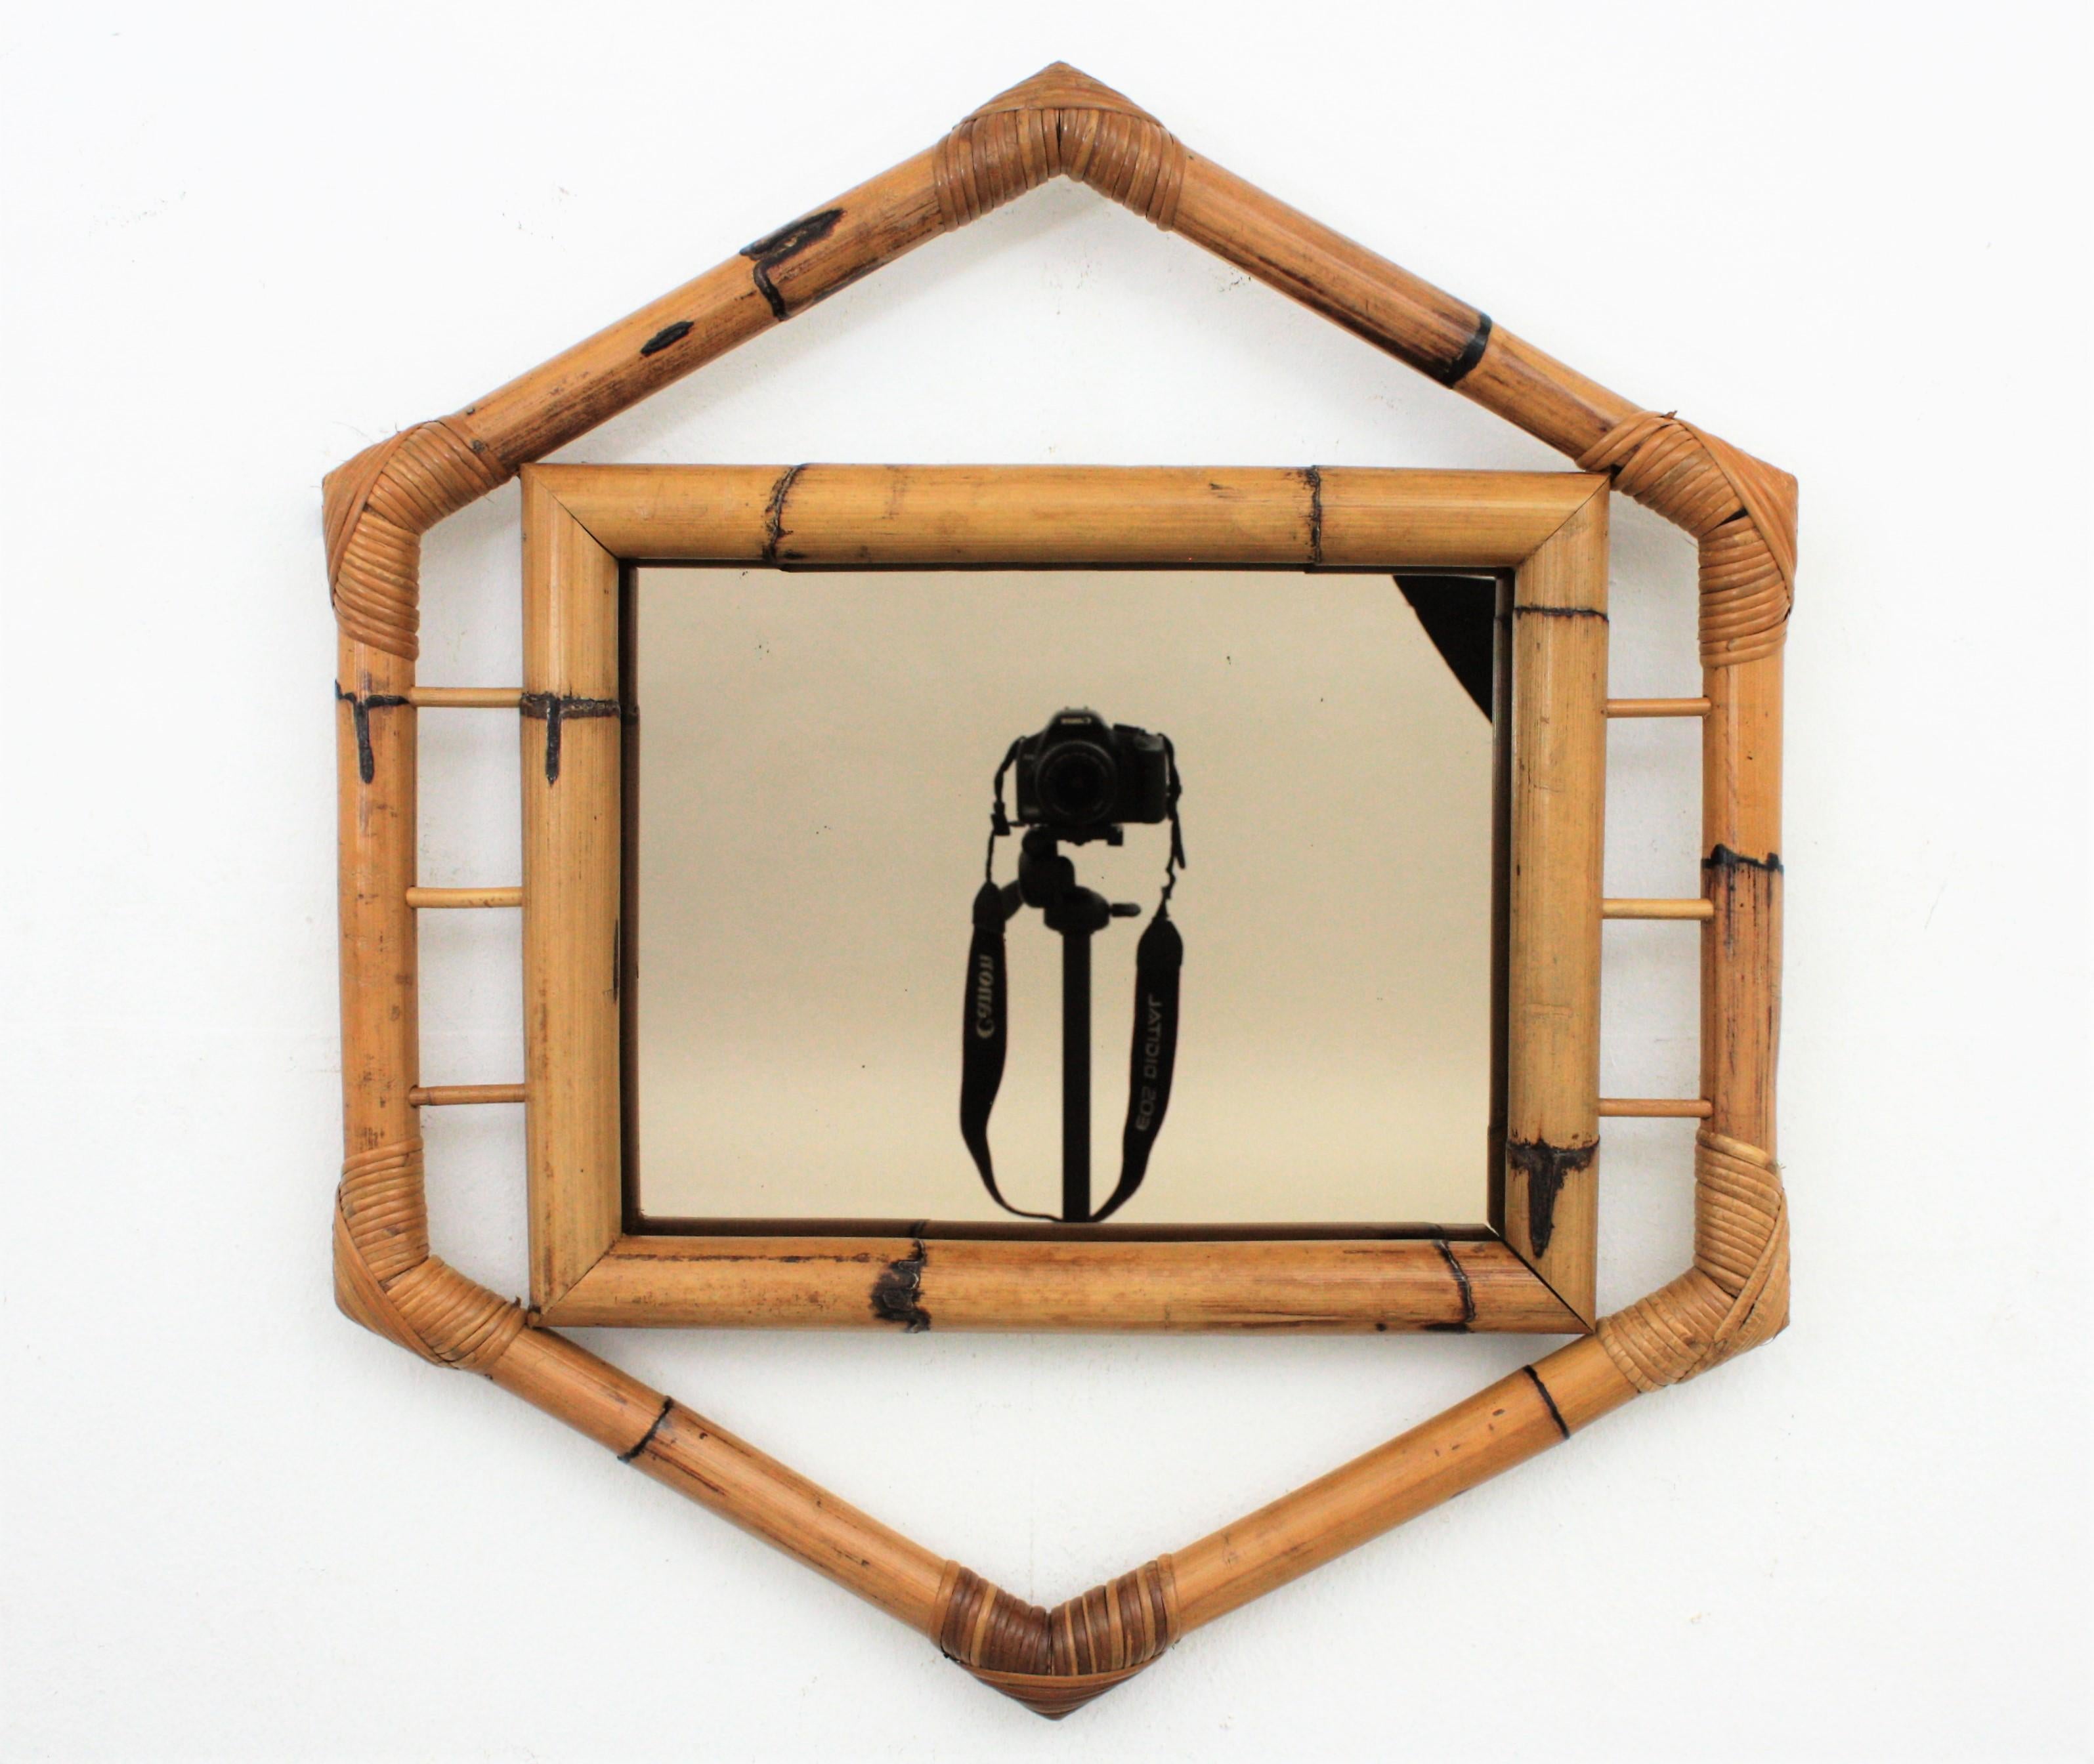 Ein wunderschöner sechseckiger Bambusspiegel mit kolonialen und orientalischen Tiki-Akzenten und geräuchertem Spiegel, Frankreich, 1950-1960.
Er ist aus dicken Bambusrohren handgefertigt, hat einige Rattan-Details und an den Ecken sind die